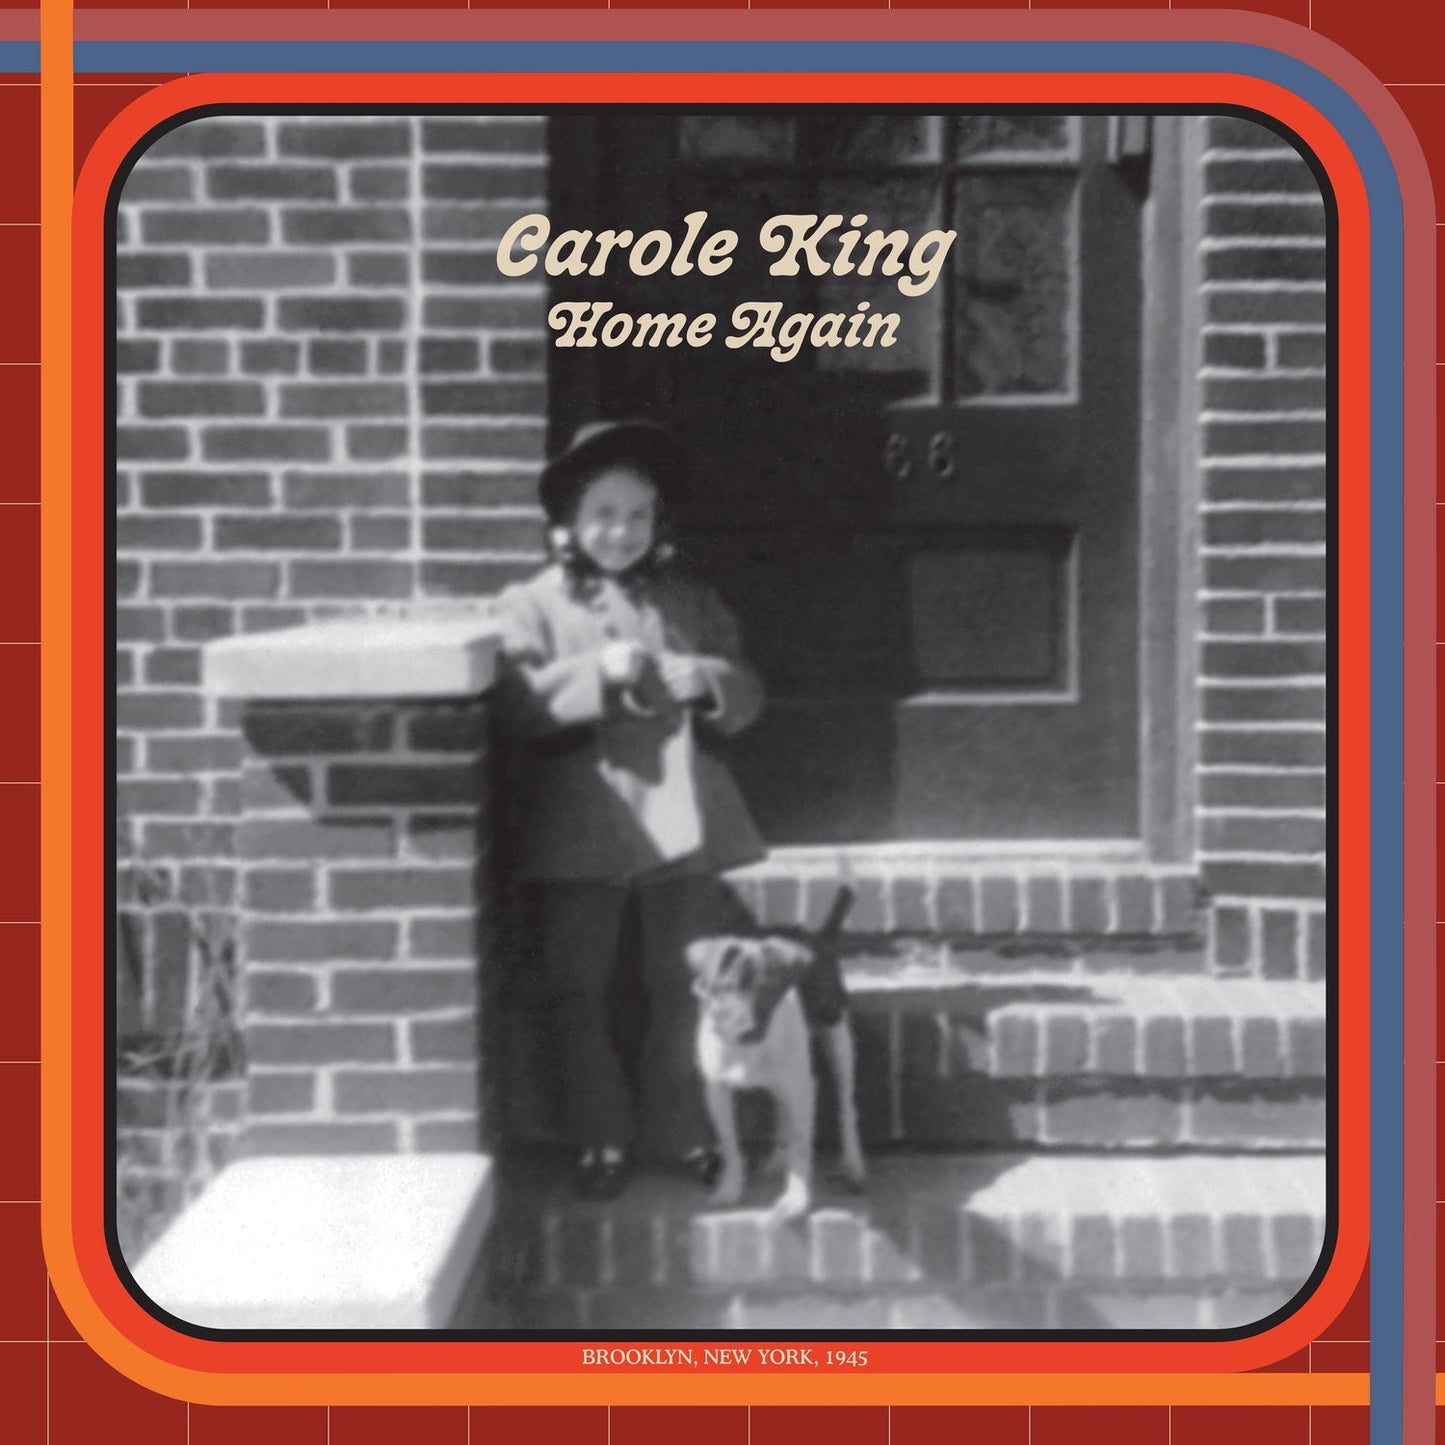 CAROLE KING - HOME AGAIN - 2-LP - VINYL LP